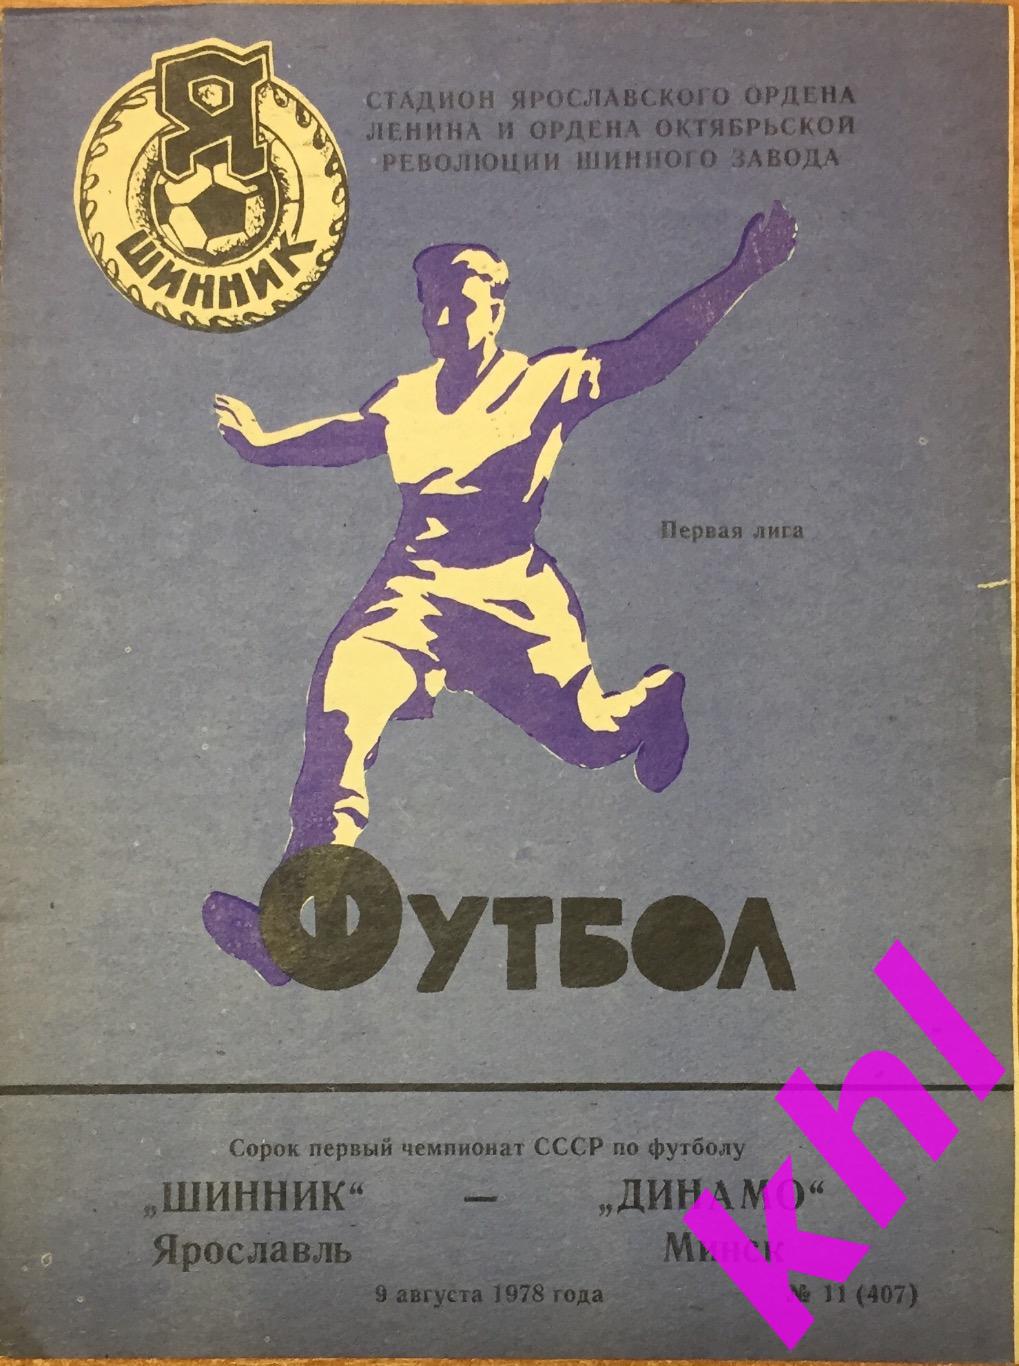 Шинник Ярославль - Динамо Минск 9 августа 1978